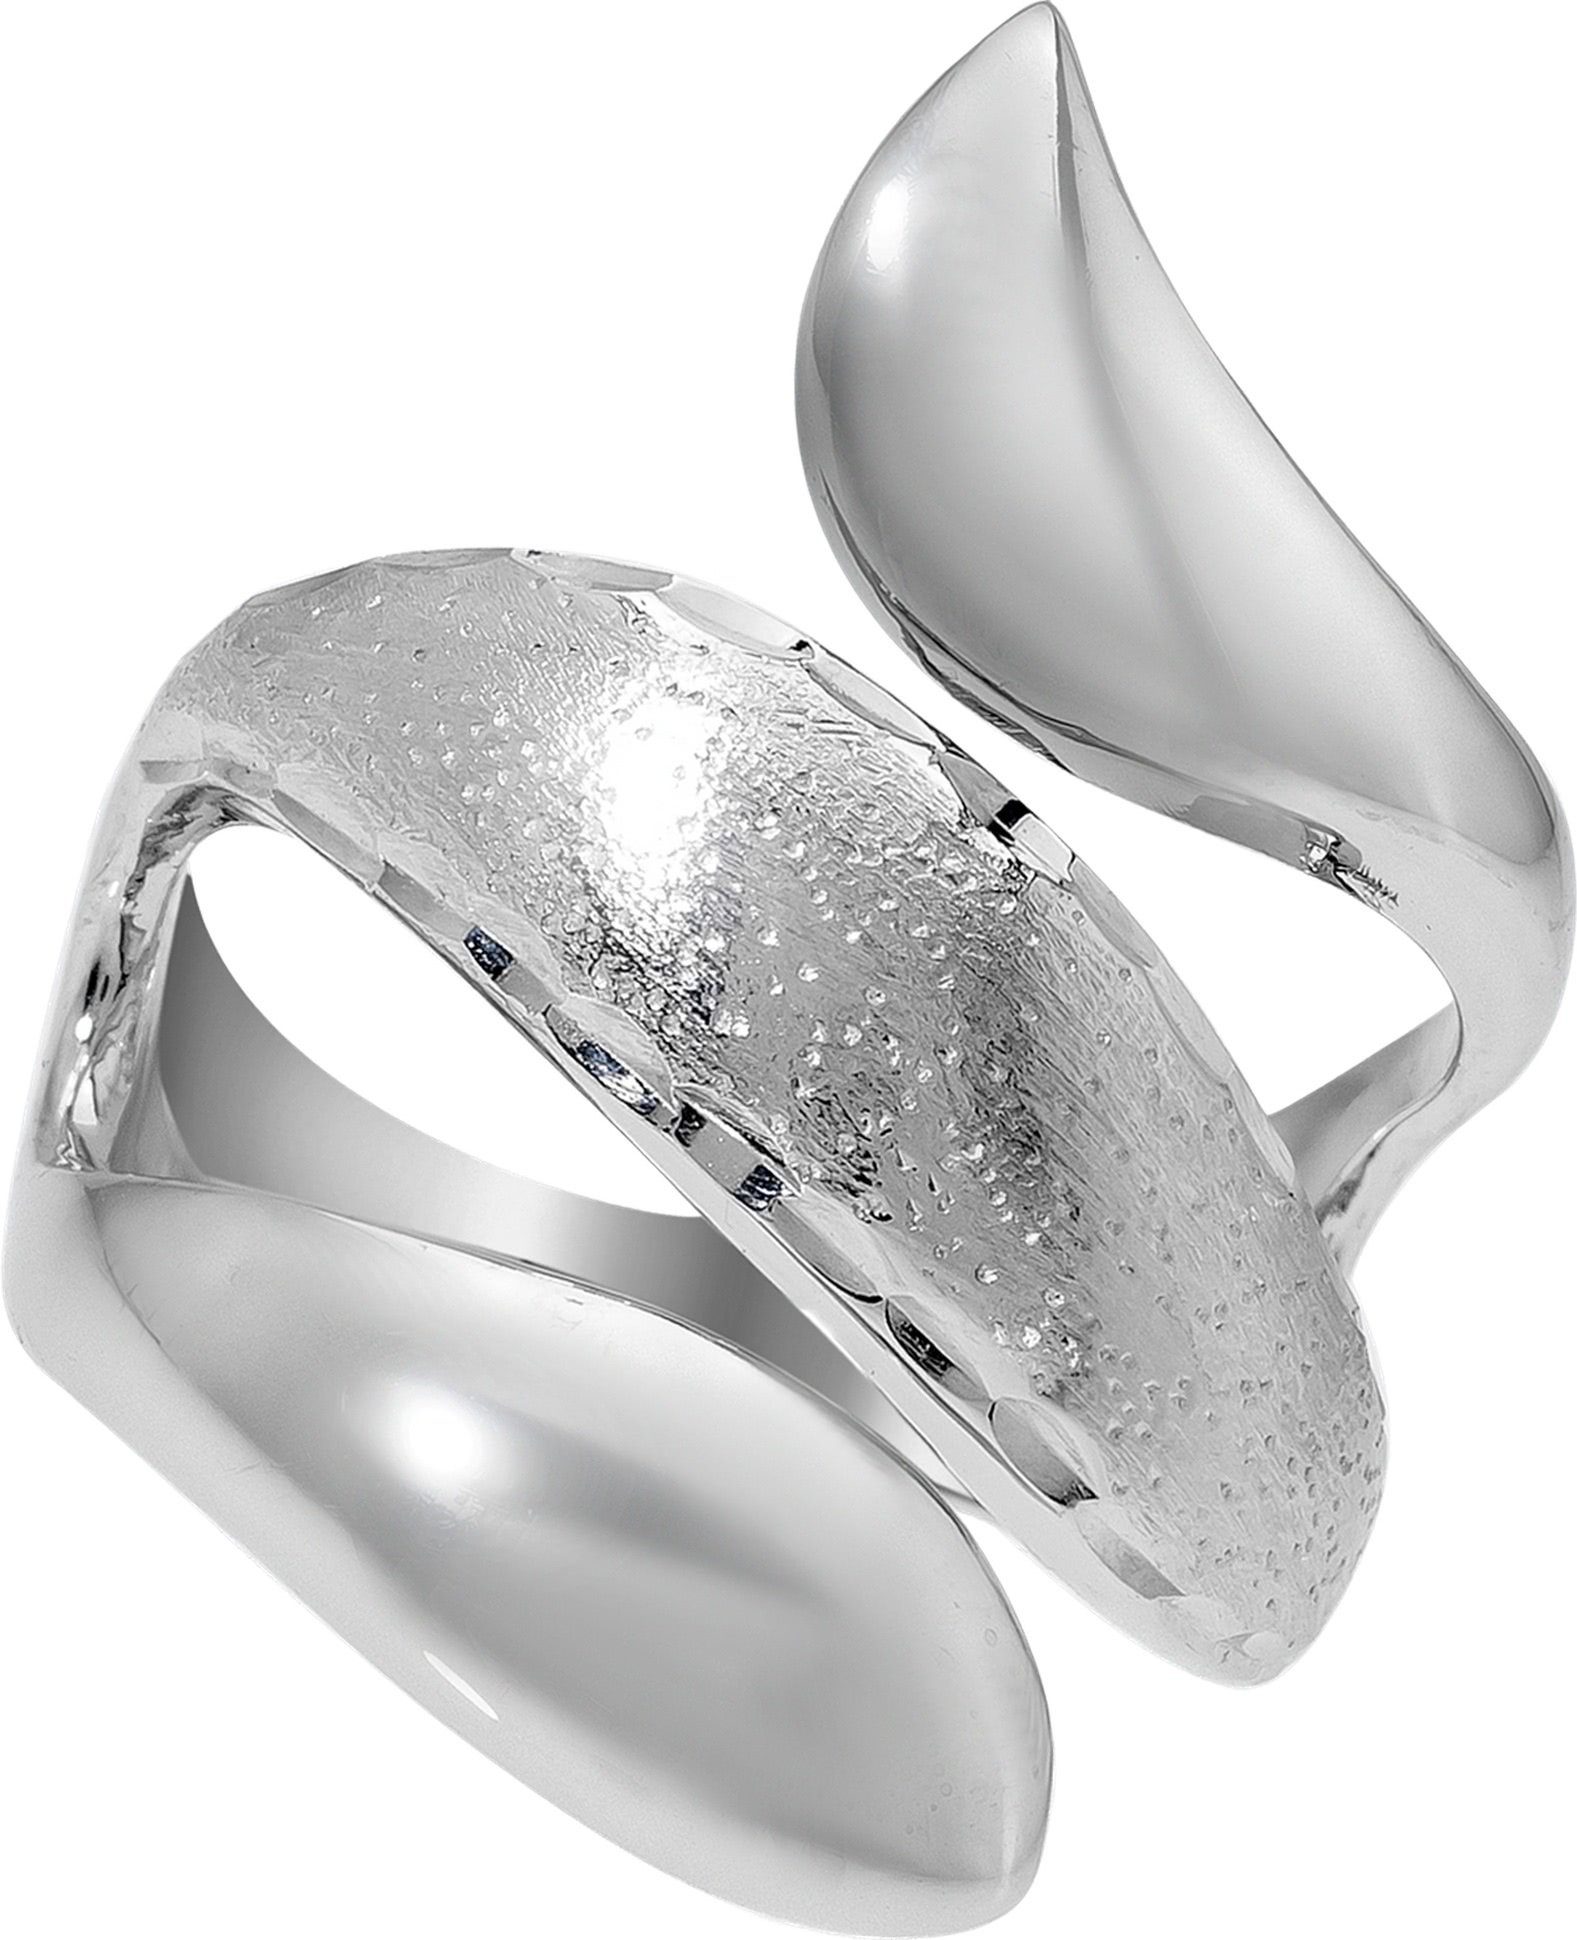 Damen Sterling 925 Balia Silberring (17,8), Silber 56 (Fingerring), Balia (Schlange) Fingerring Ring 925 für Größe mit Silber diamantierter